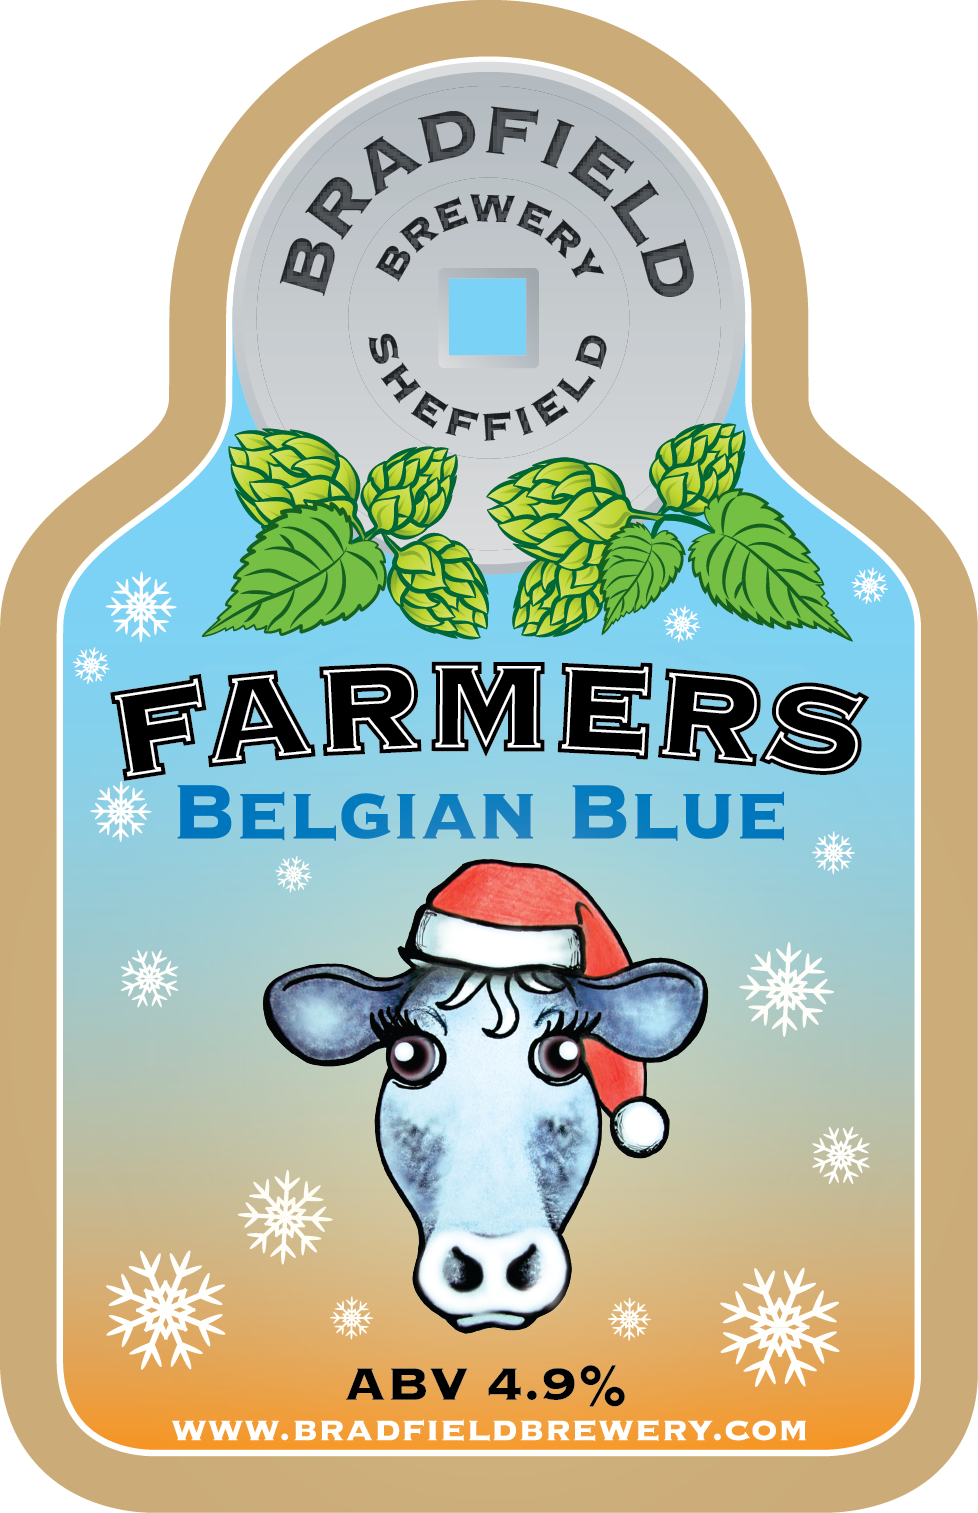 Bradfield-Brewery_Farmers_Belgian_Blue.png